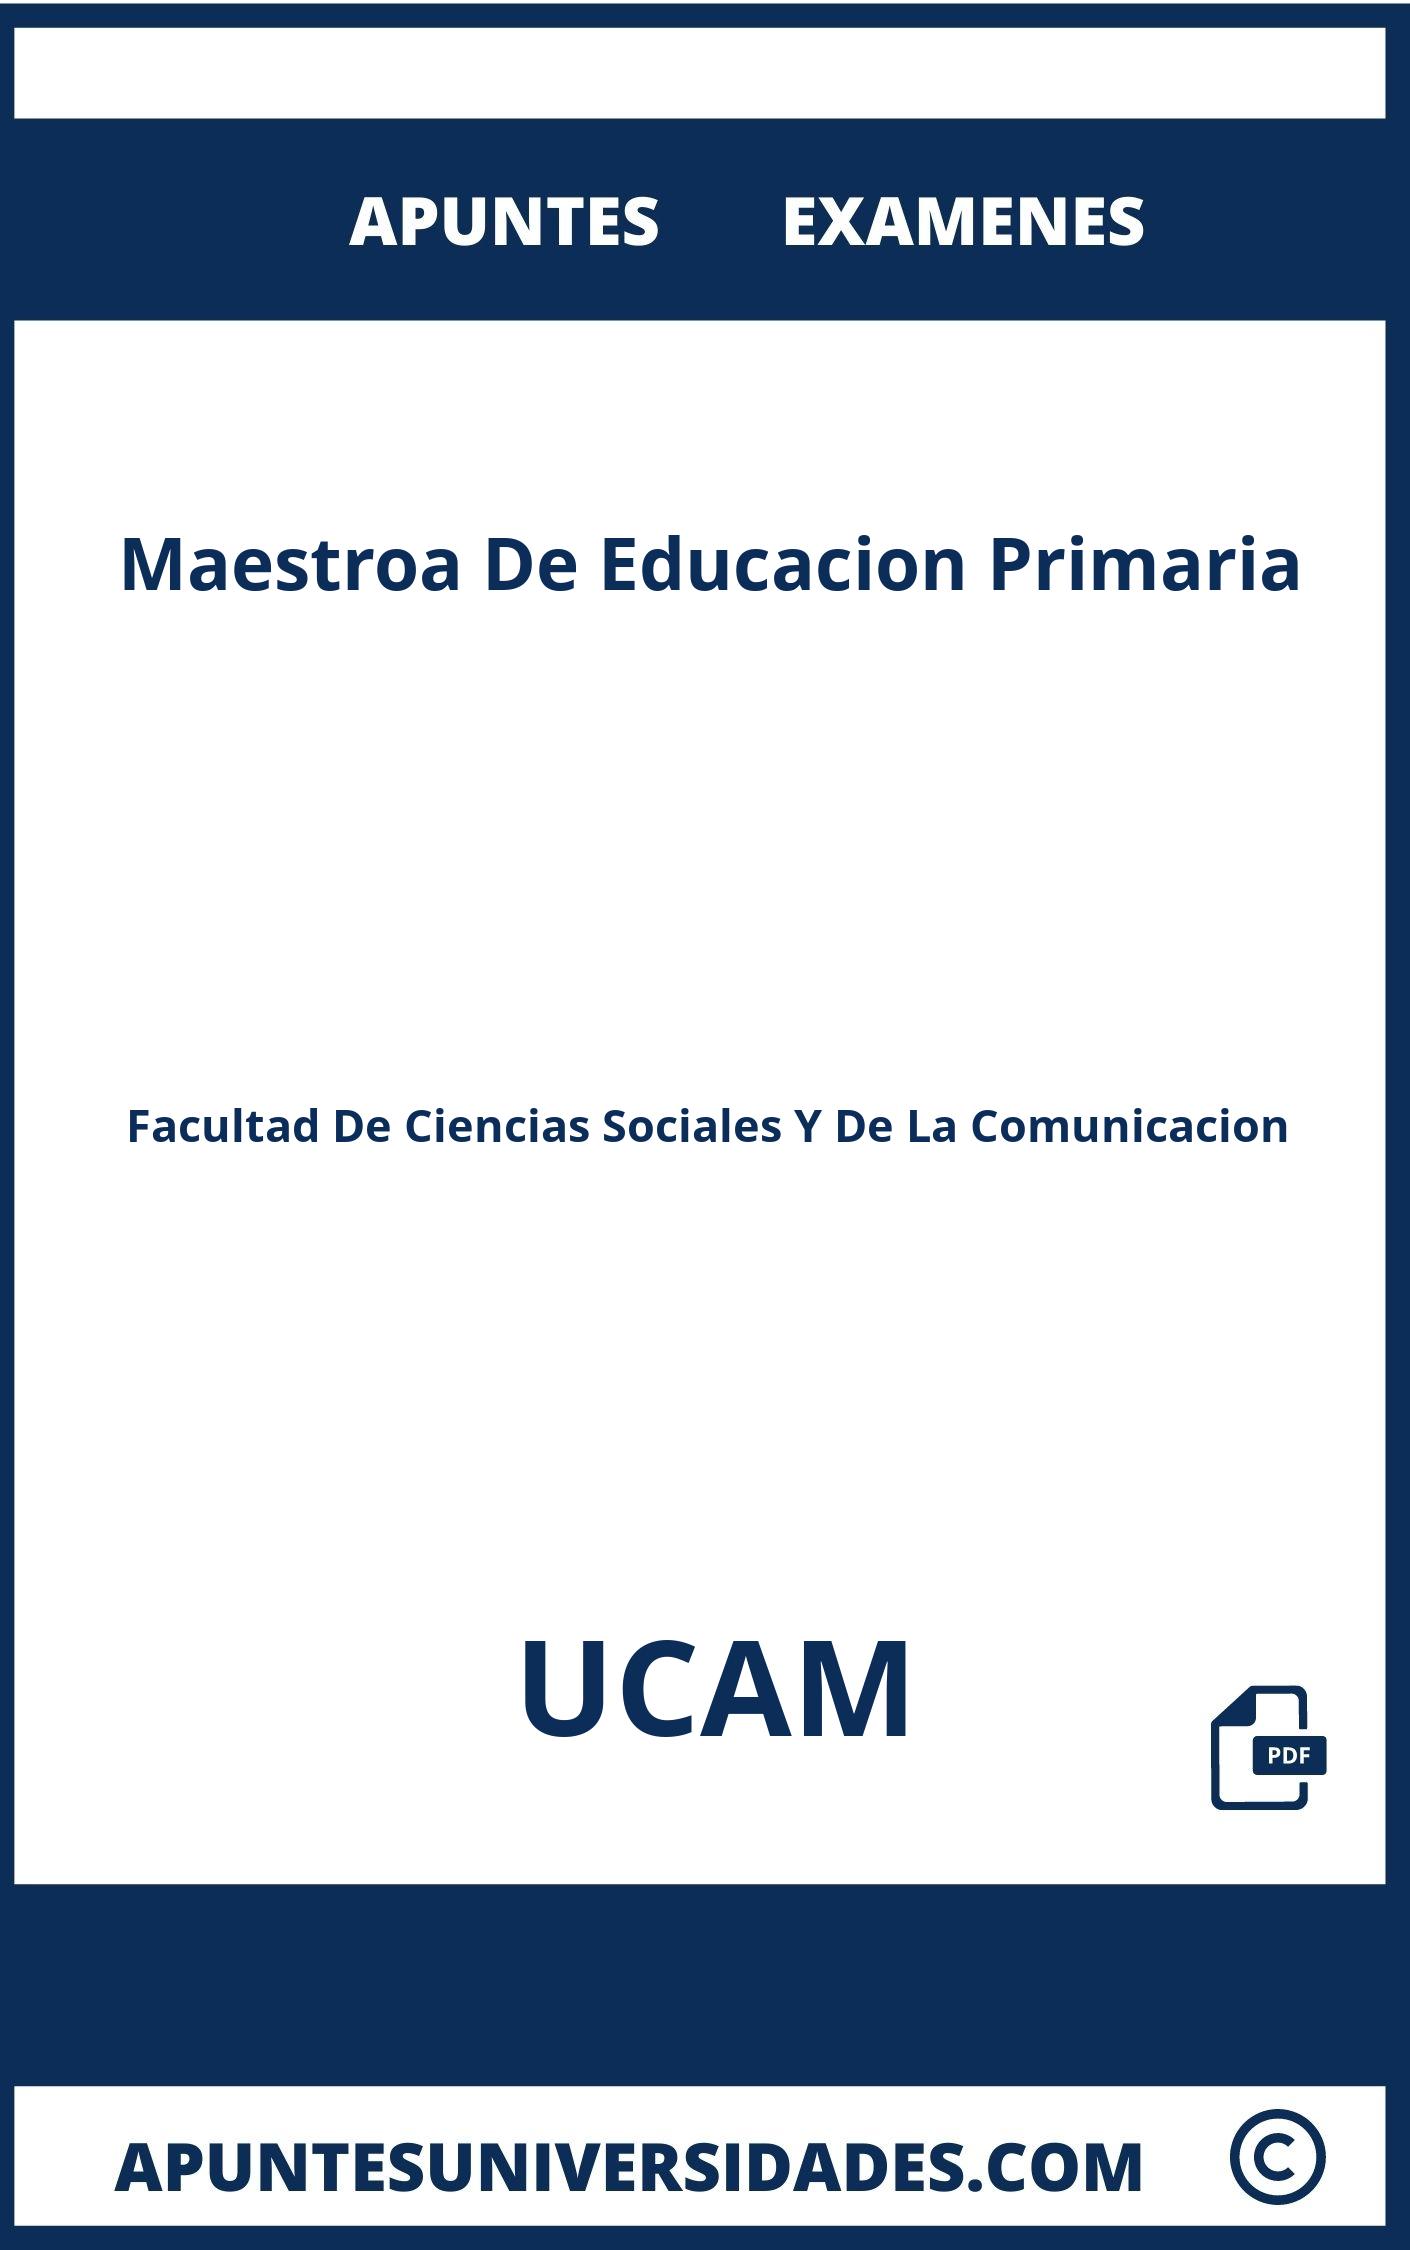 Apuntes y Examenes Maestroa De Educacion Primaria UCAM